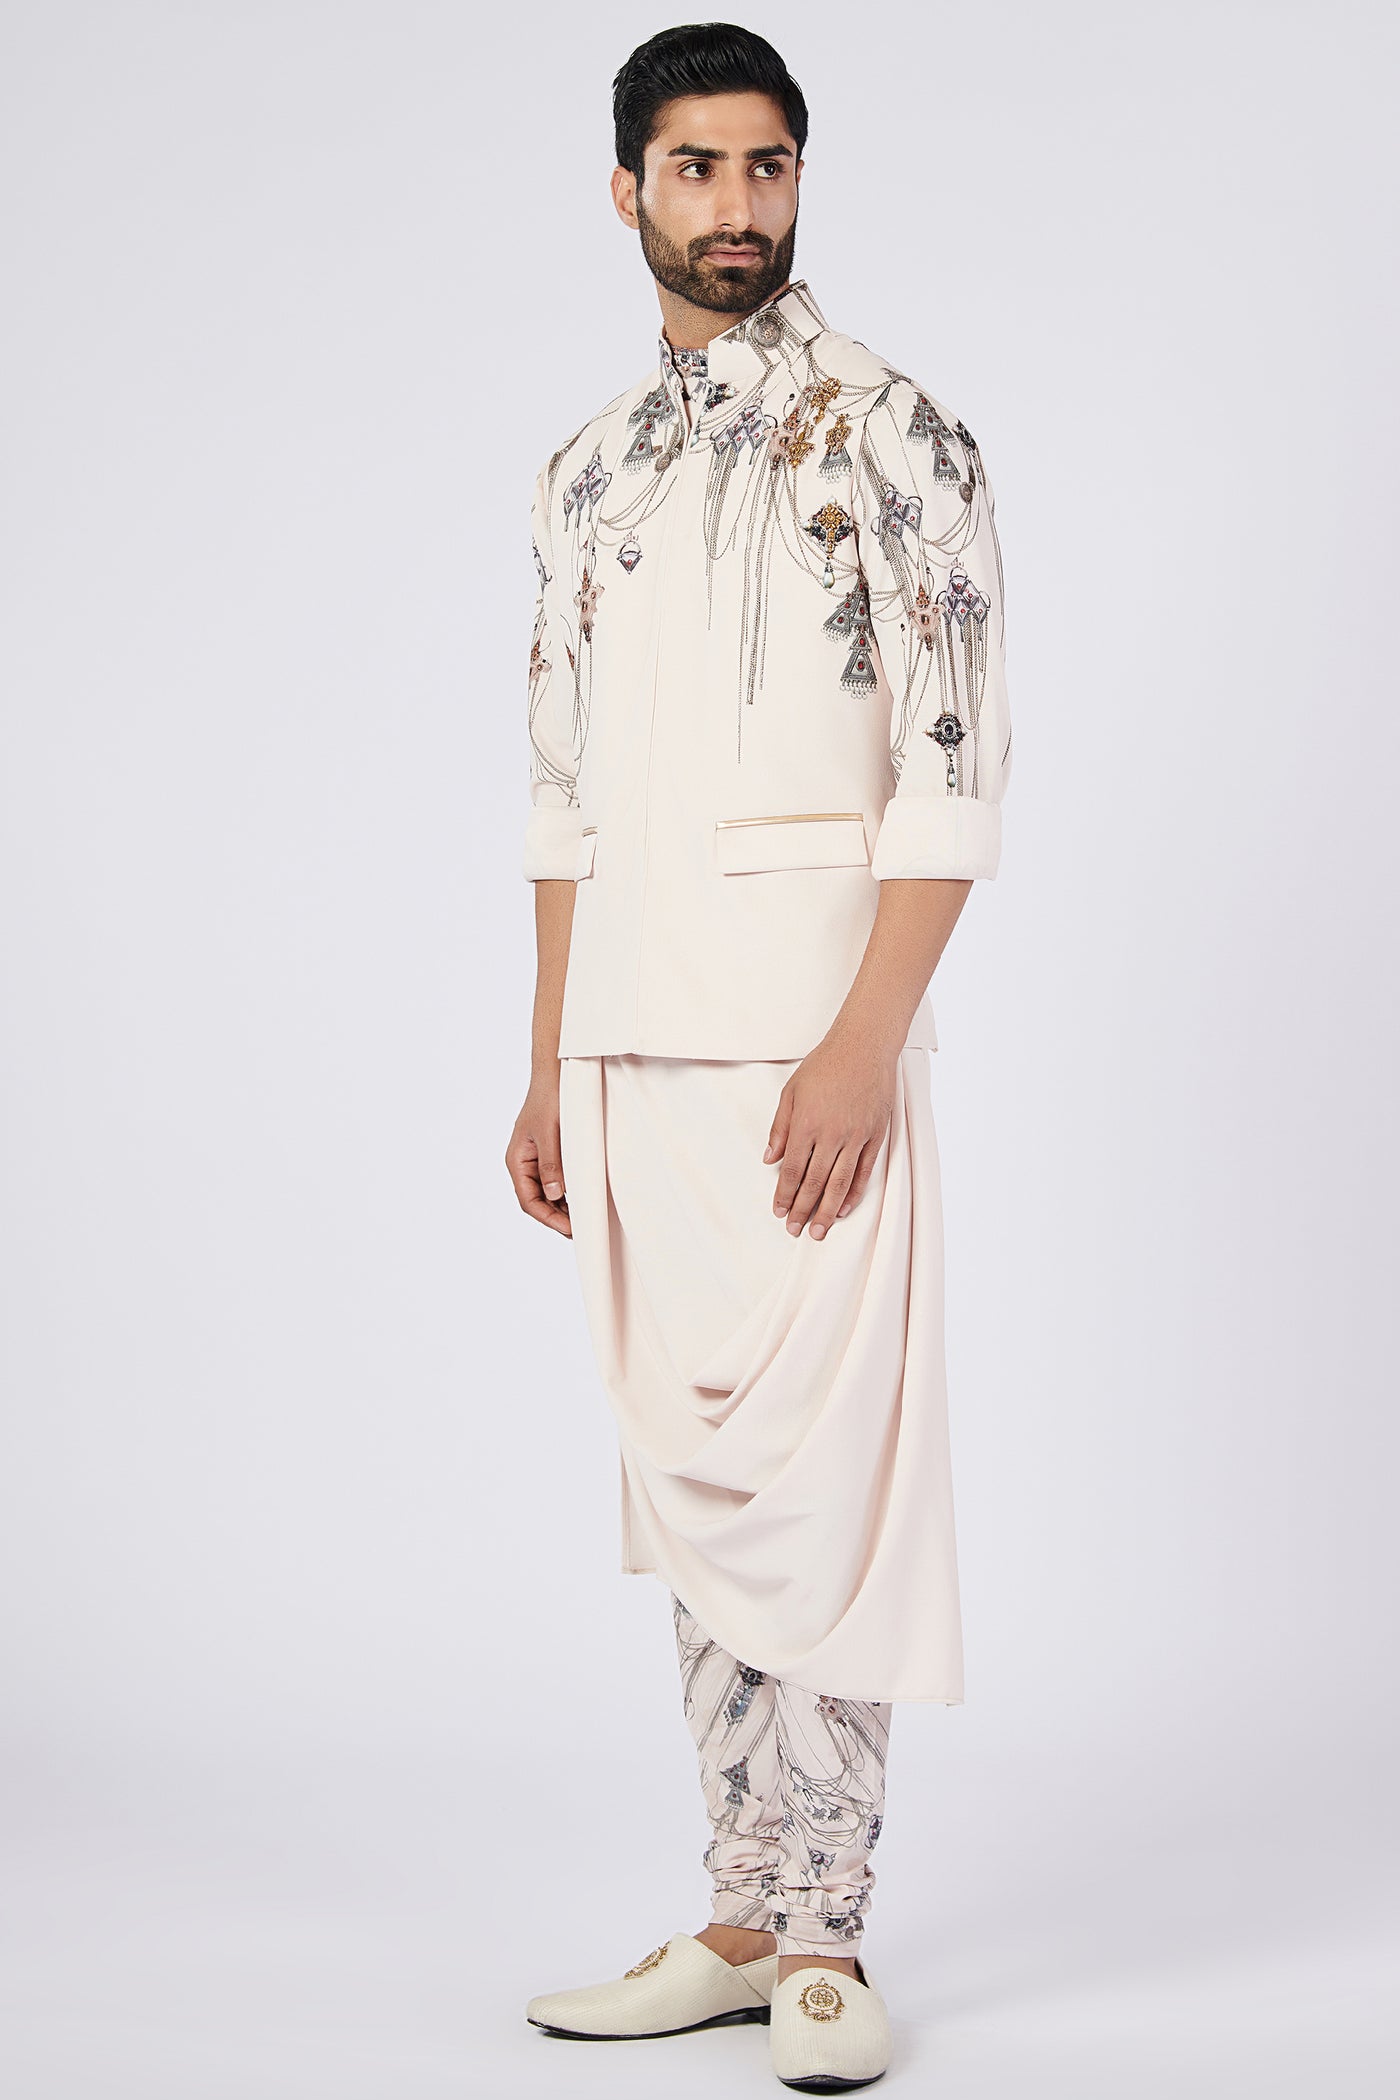 SN By Shantanu Nikhil Menswear Printed Churidar indian designer wear online shopping melange singapore